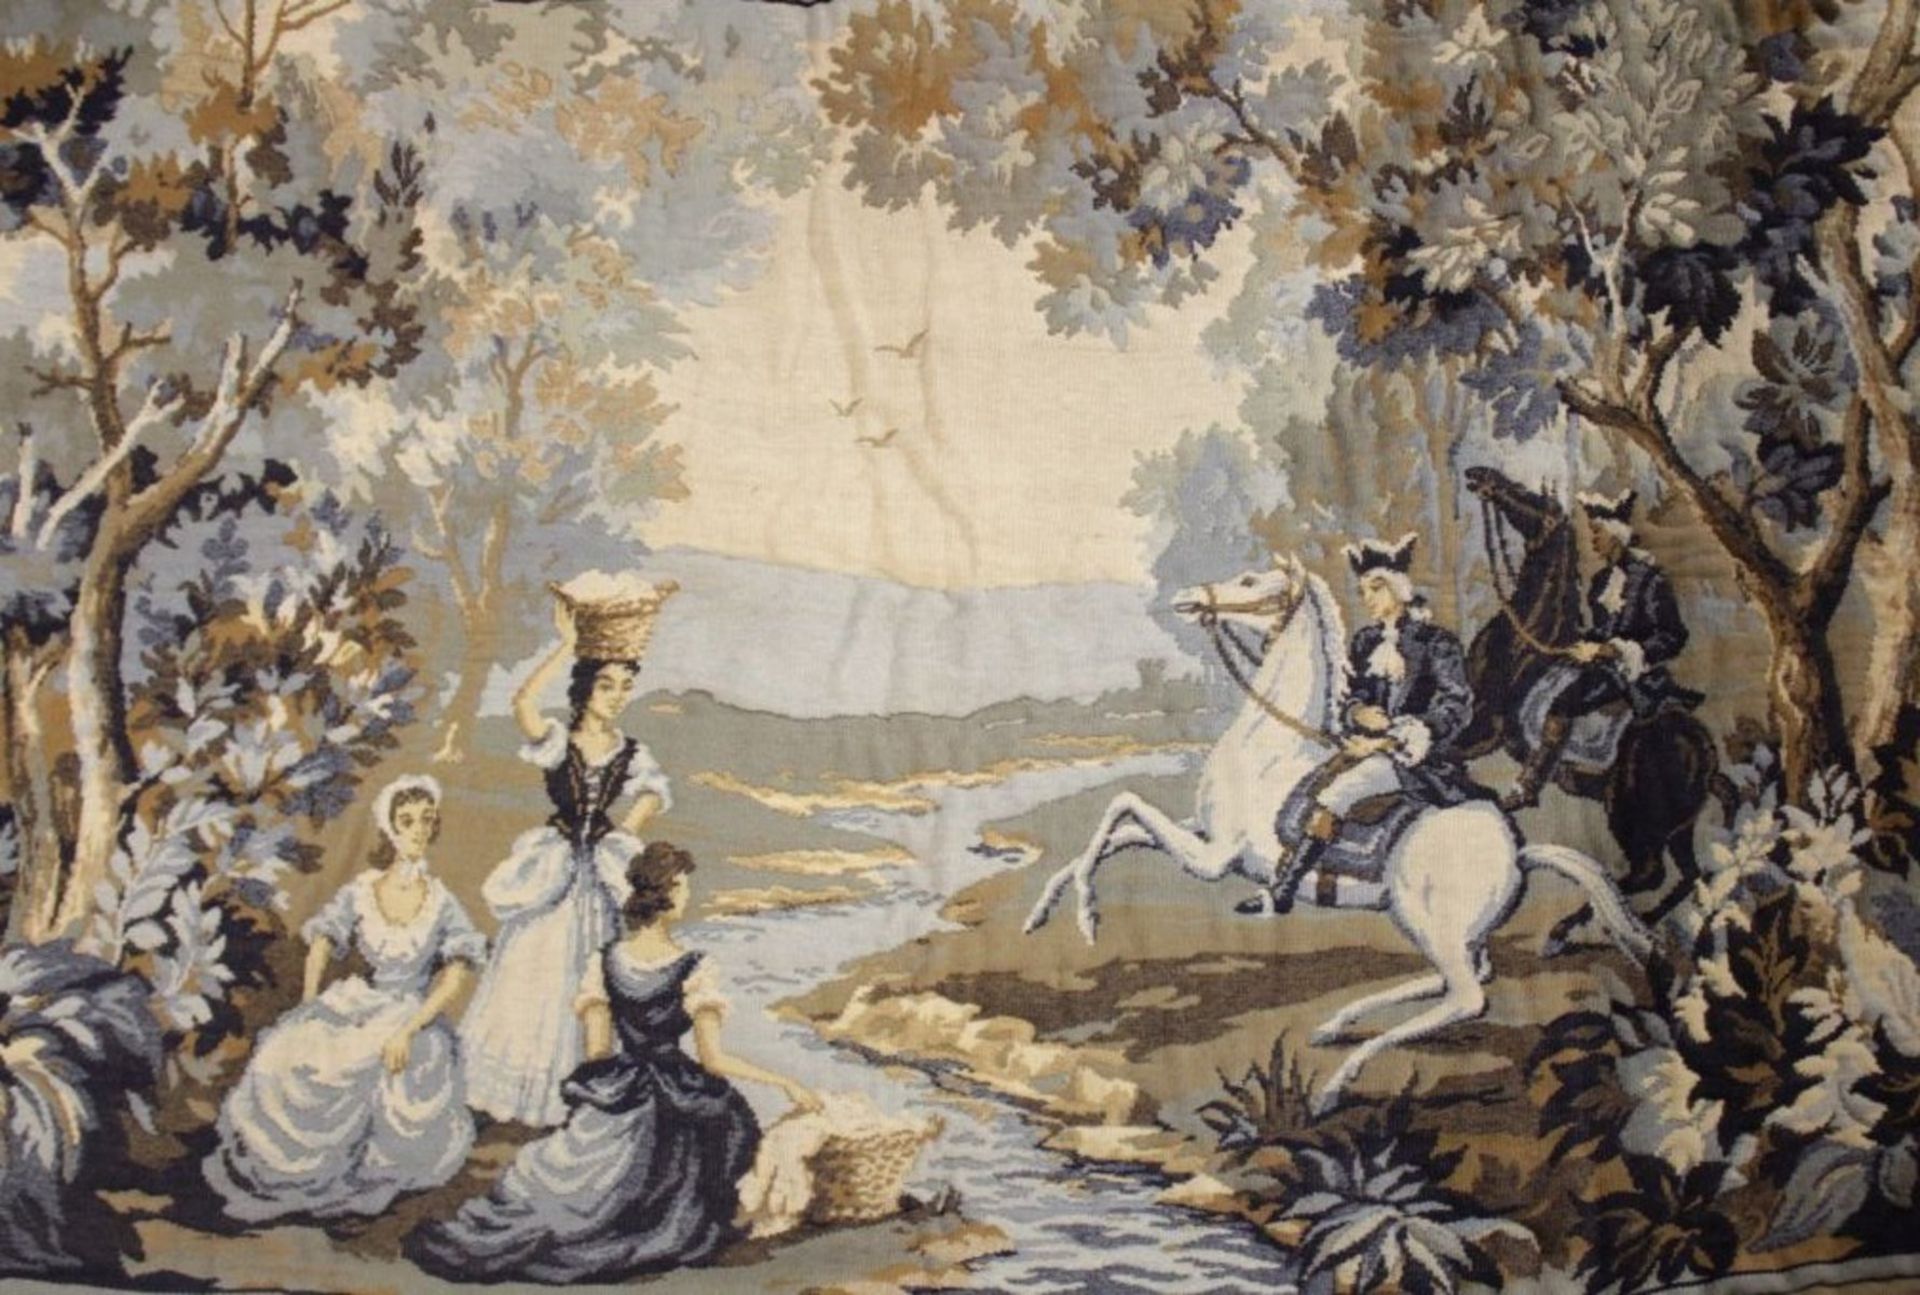 Wandteppich, Gobelin, galante Szenerie, älter, leichte Gebrauchsspuren, 100 x 160cm. - Bild 2 aus 3